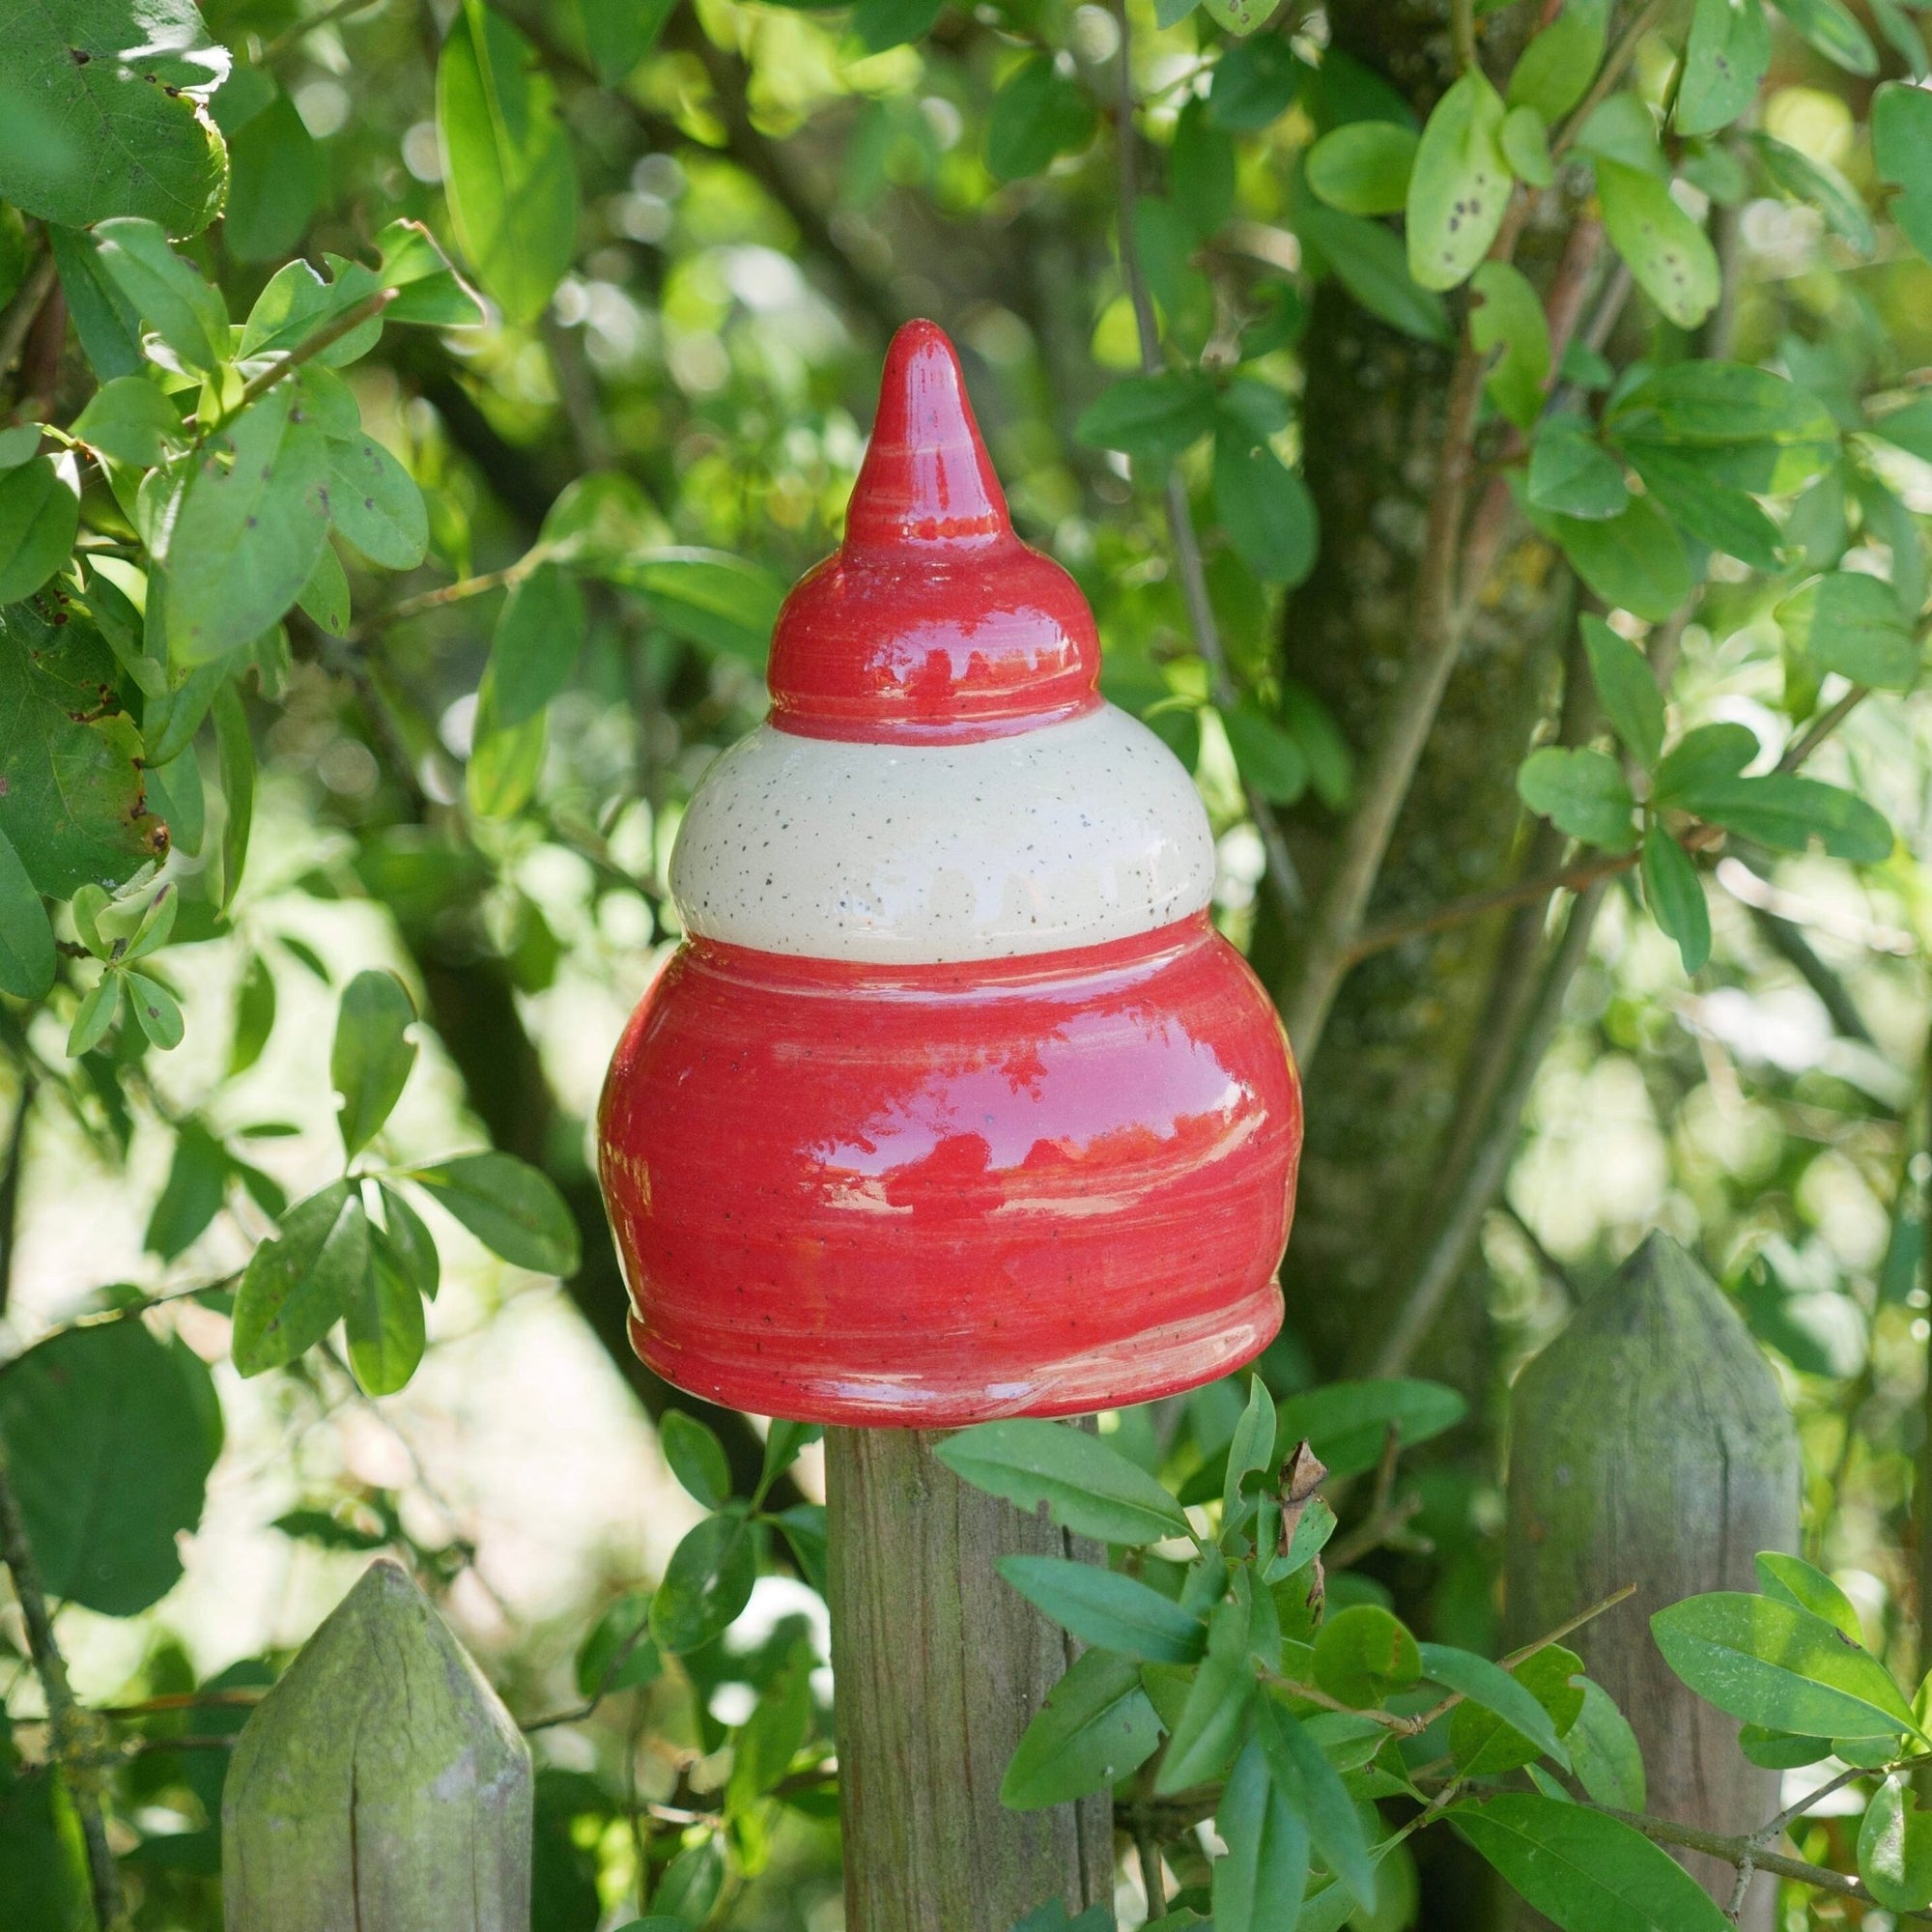 Gartenstecker, Beetstecker, Gartenspitze klein (ca 12 cm hoch, Öffnung 5-6 cm ) Rot